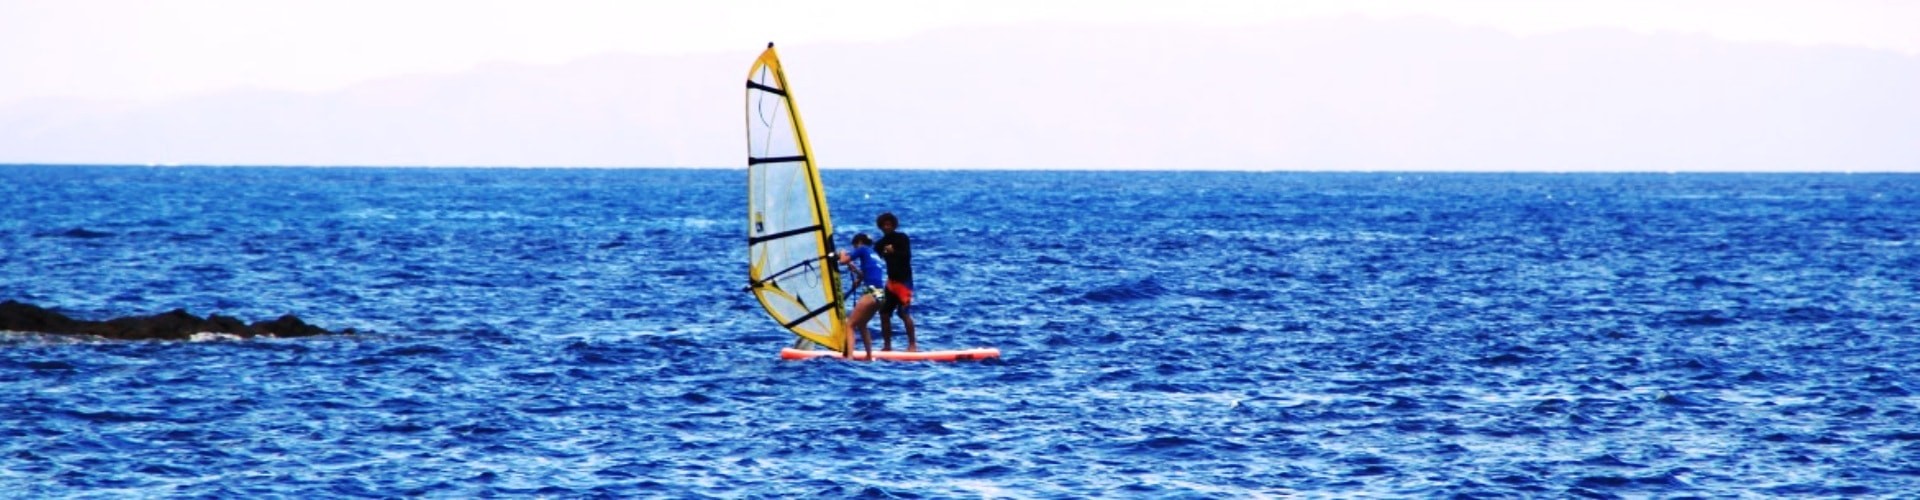 Windsurf na Ilha da Madeira